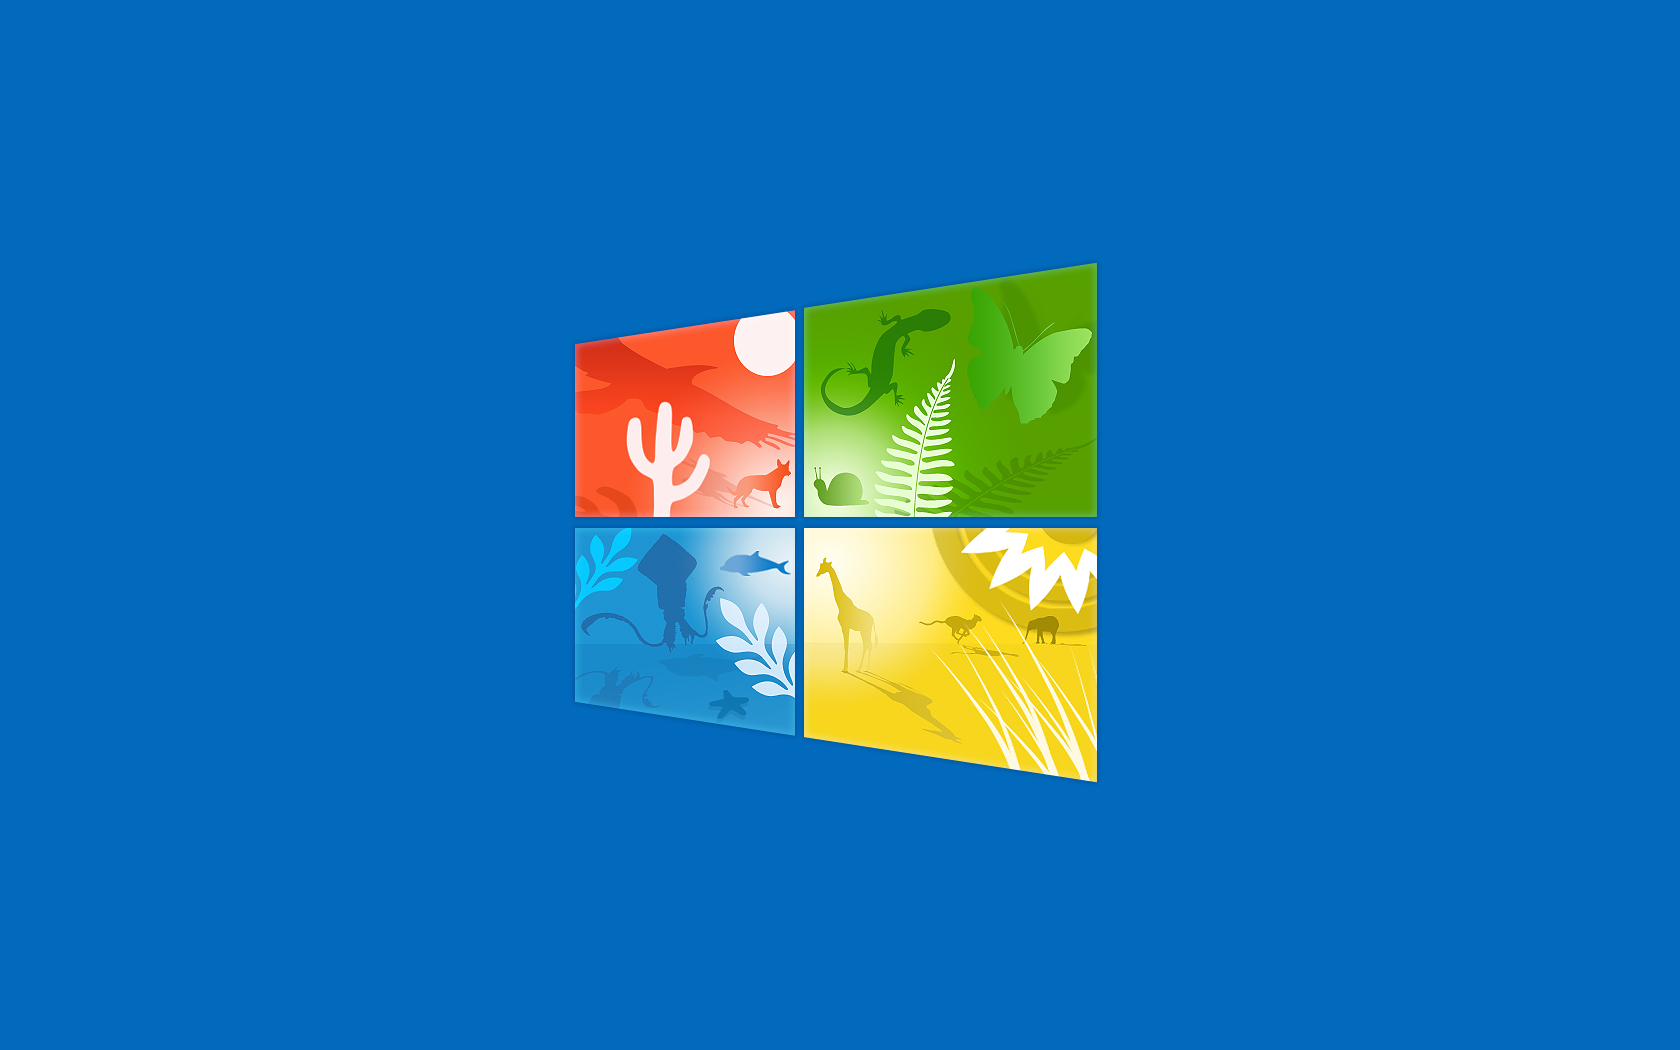 Скачать обои бесплатно Окна, Технологии, Лого, Windows 10 картинка на рабочий стол ПК